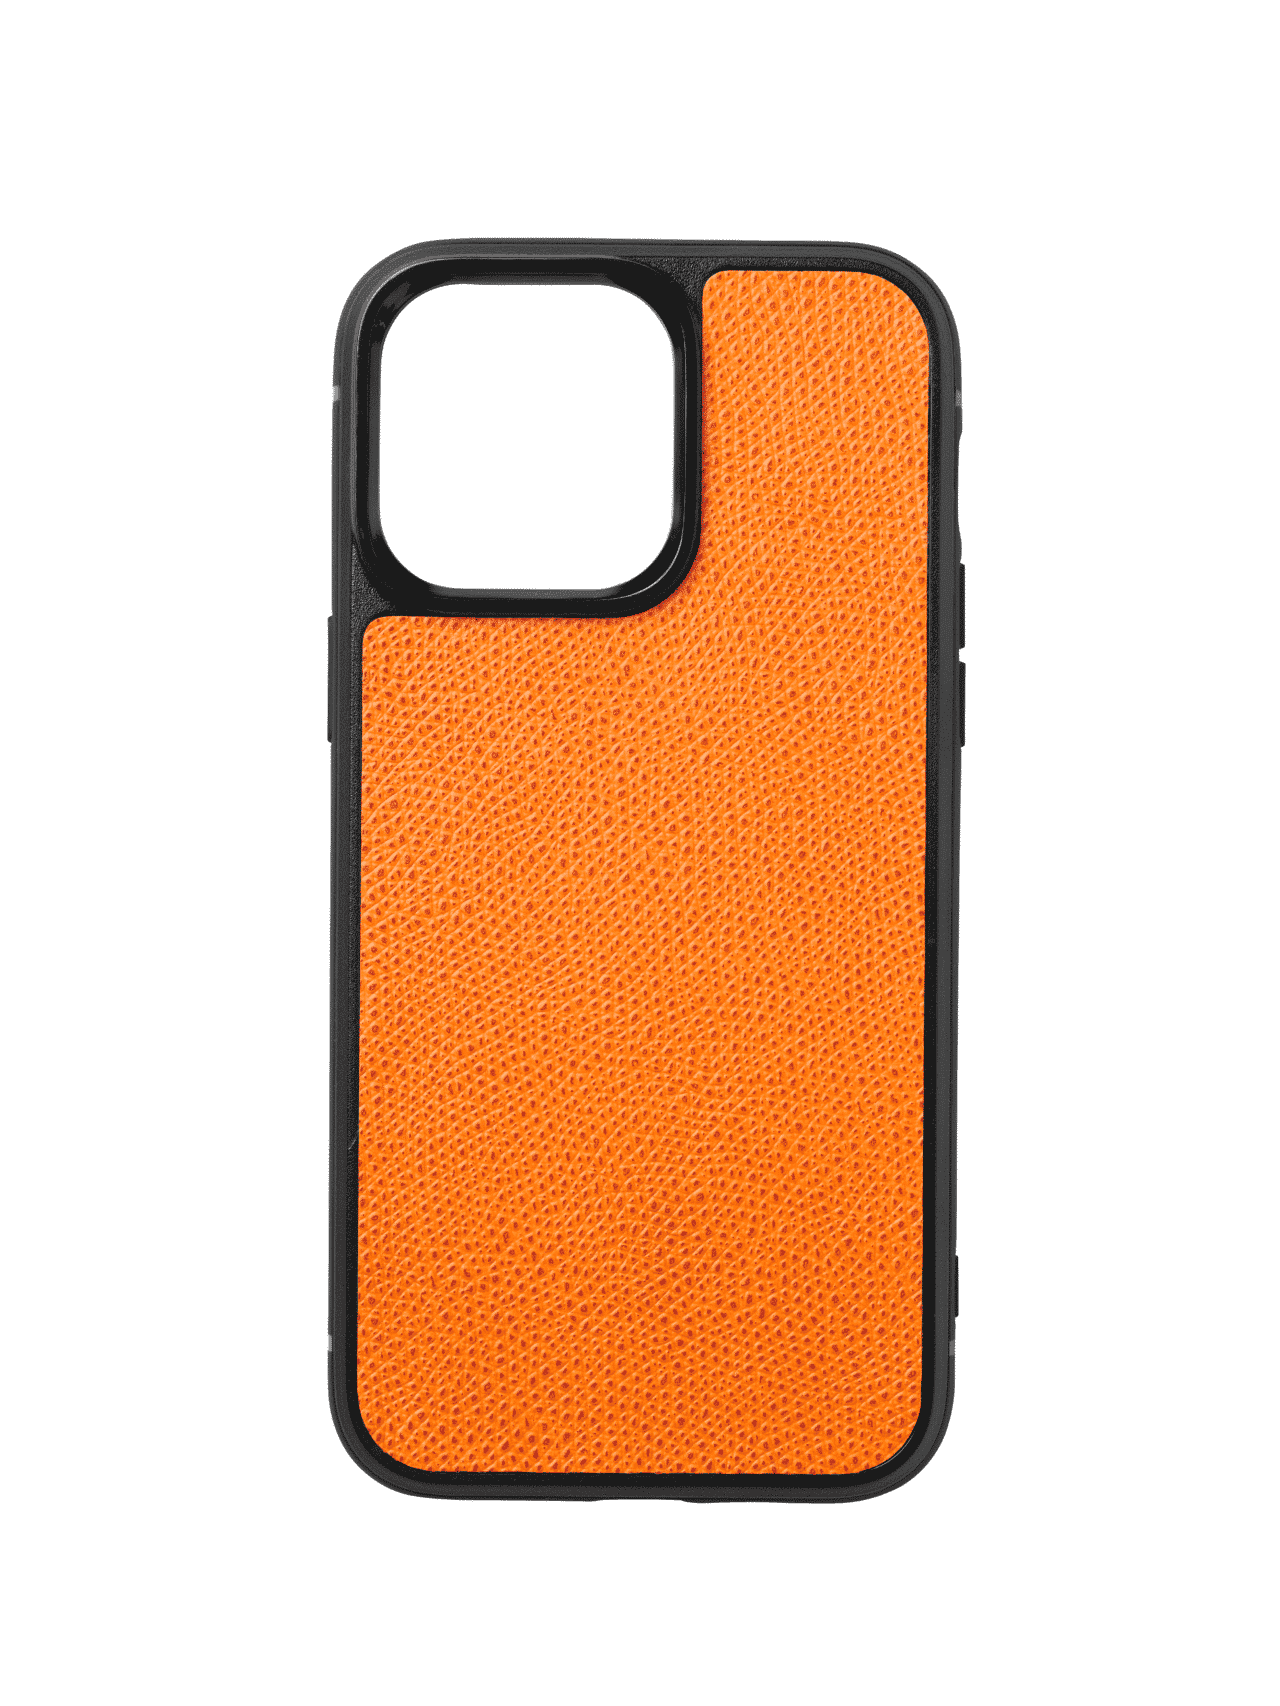 iphone case 14 leather calf orange